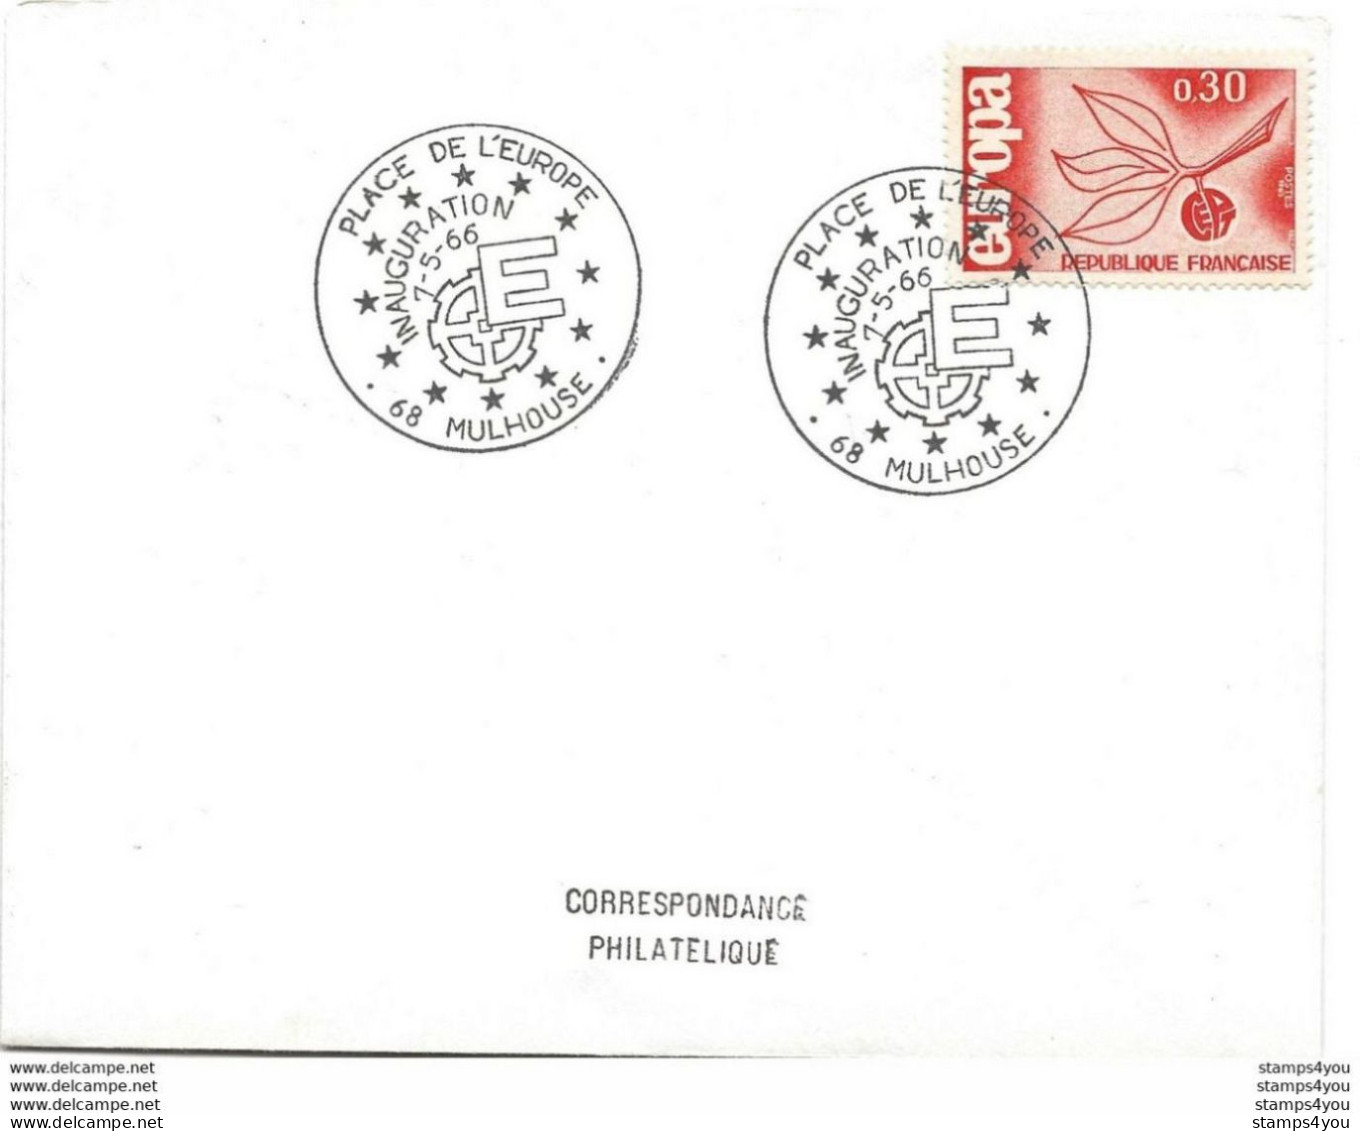 194 - 28 - Enveloppe Avec Timbre Europa Et Oblit Spéciale MUlhouse Inauguration Place De L'Europe 1966 - European Ideas